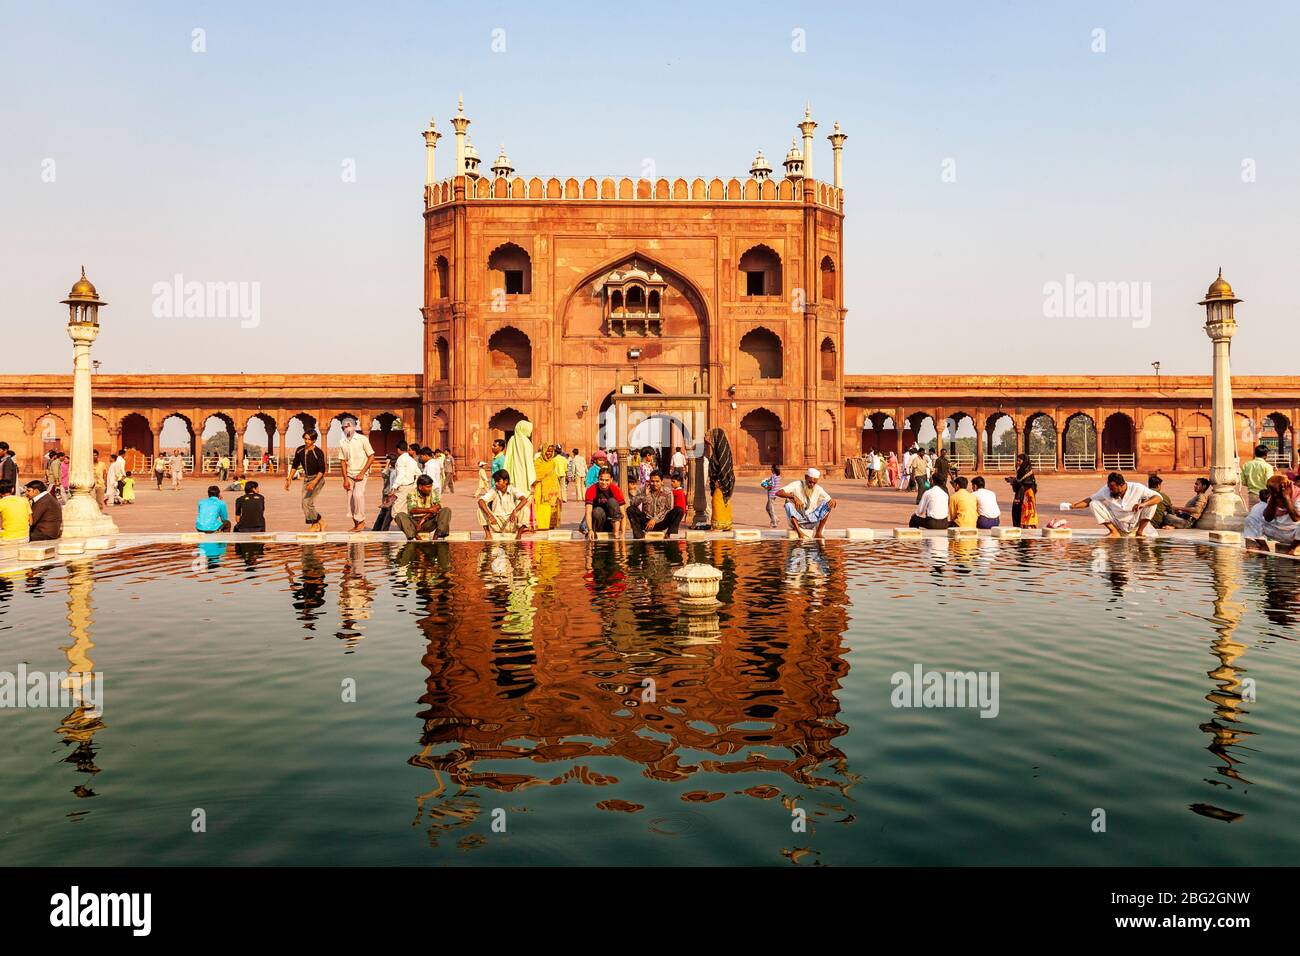 La mosquée de Jama Masjid se reflète dans la fontaine centrale d'Agra, en Inde Banque D'Images